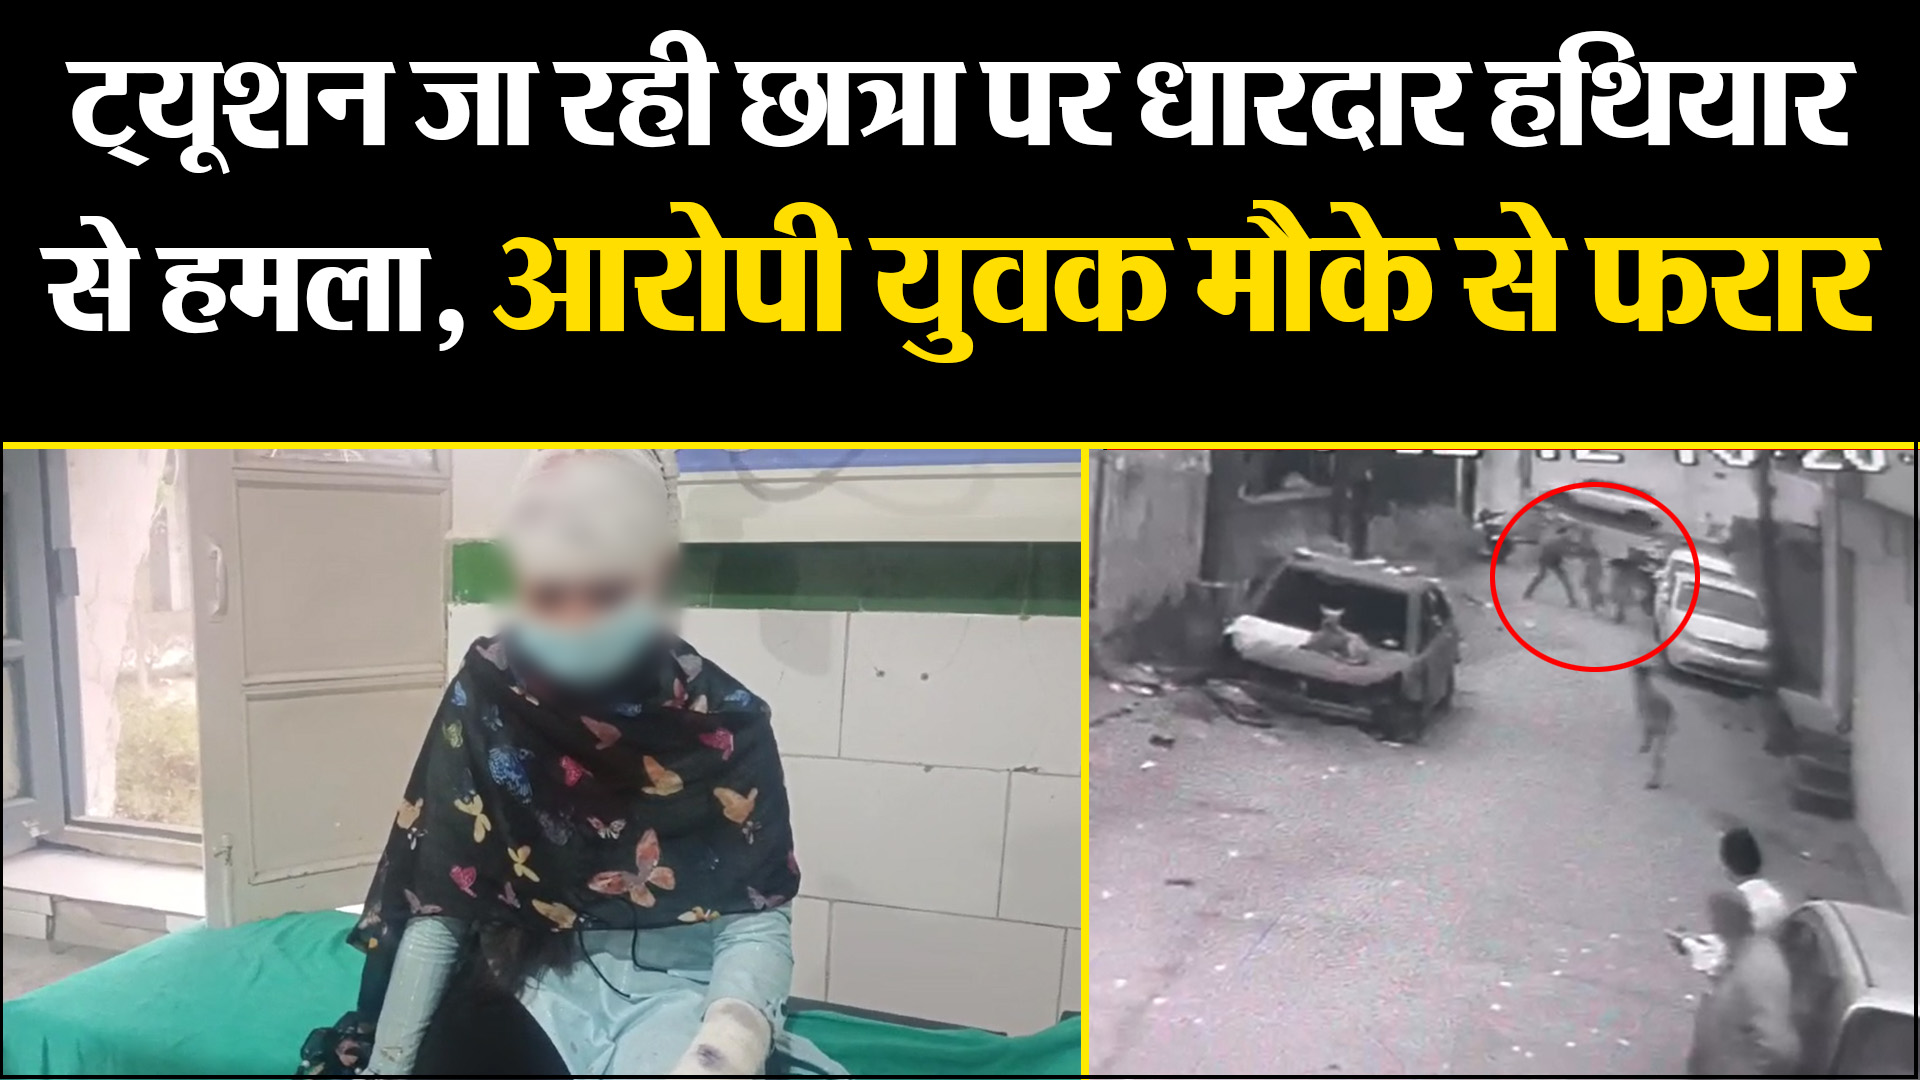 काशीपुर: ट्यूशन जा रही छात्रा पर धारदार हथियार से हमला, आरोपी युवक मौके से फरार 